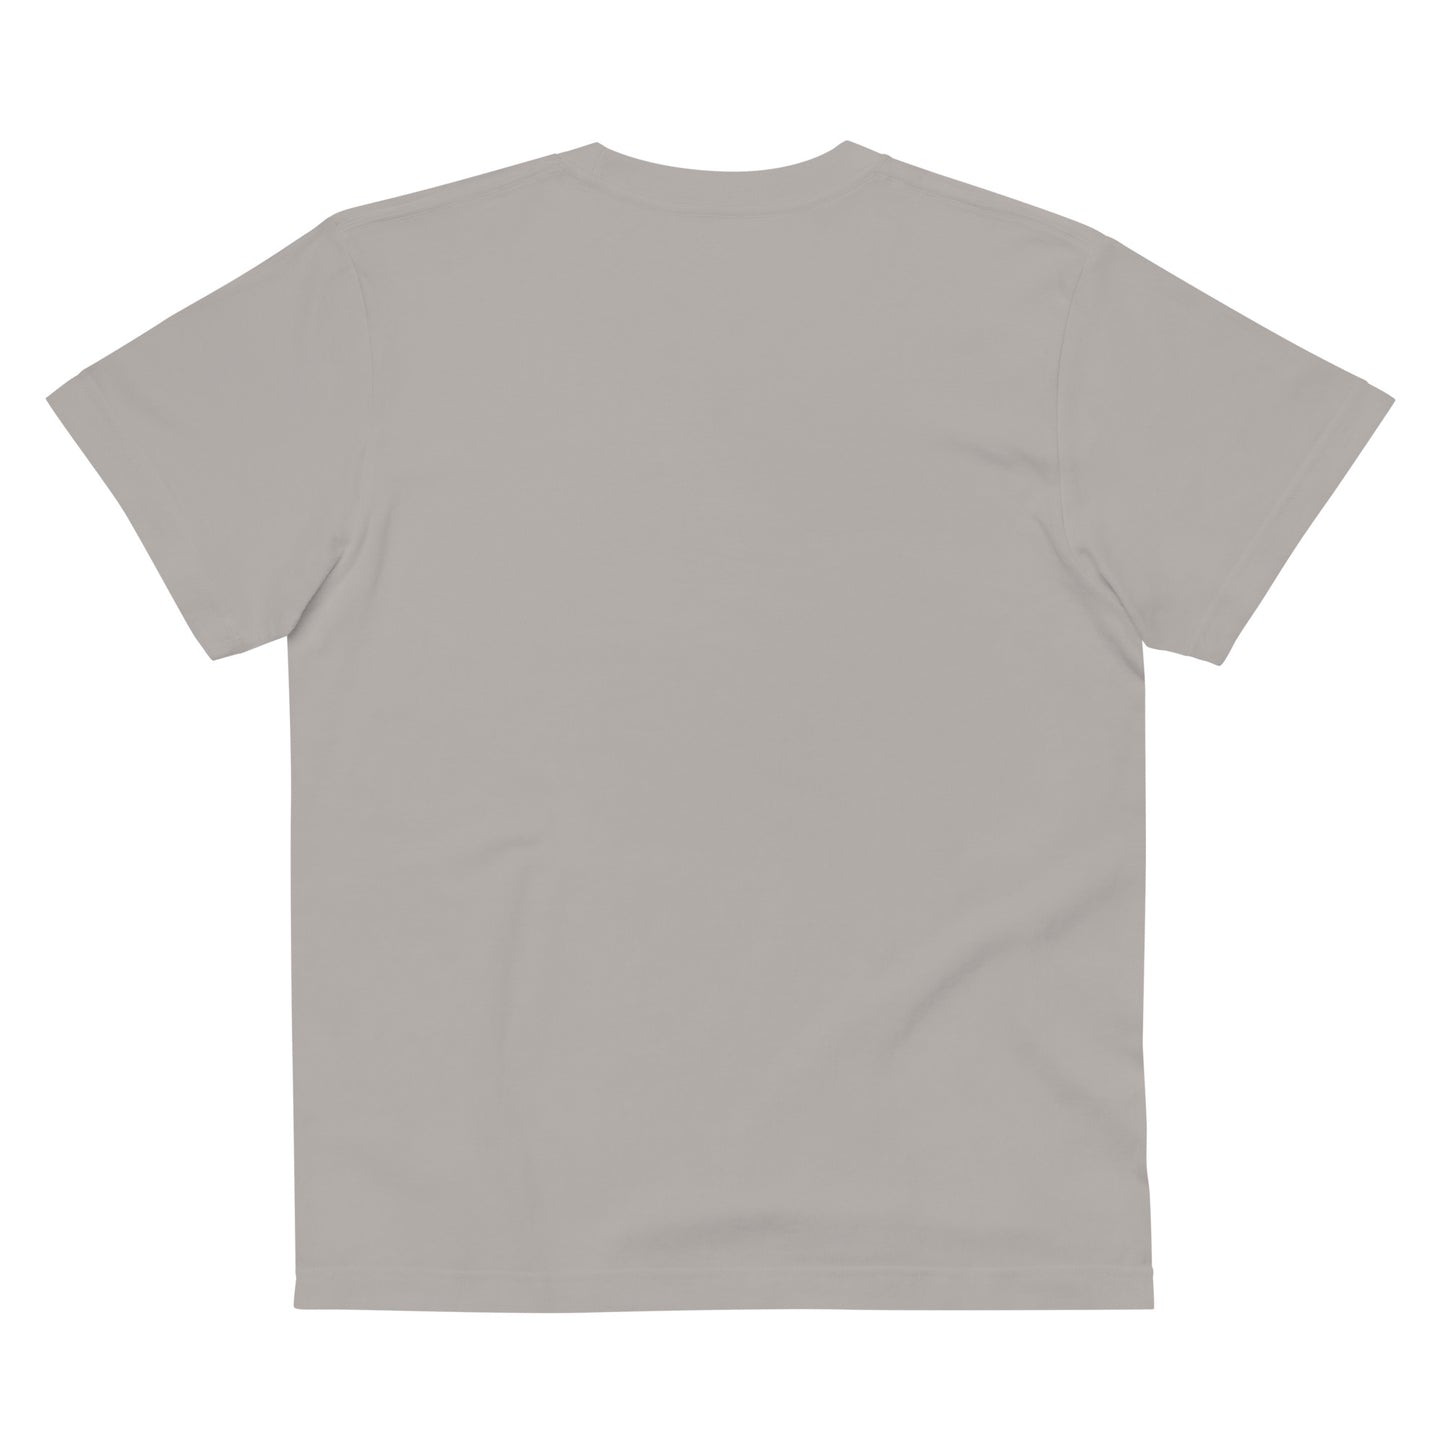 E007 - T-shirt kapas berkualiti tinggi (MC Offroad: Kelabu/Perak)